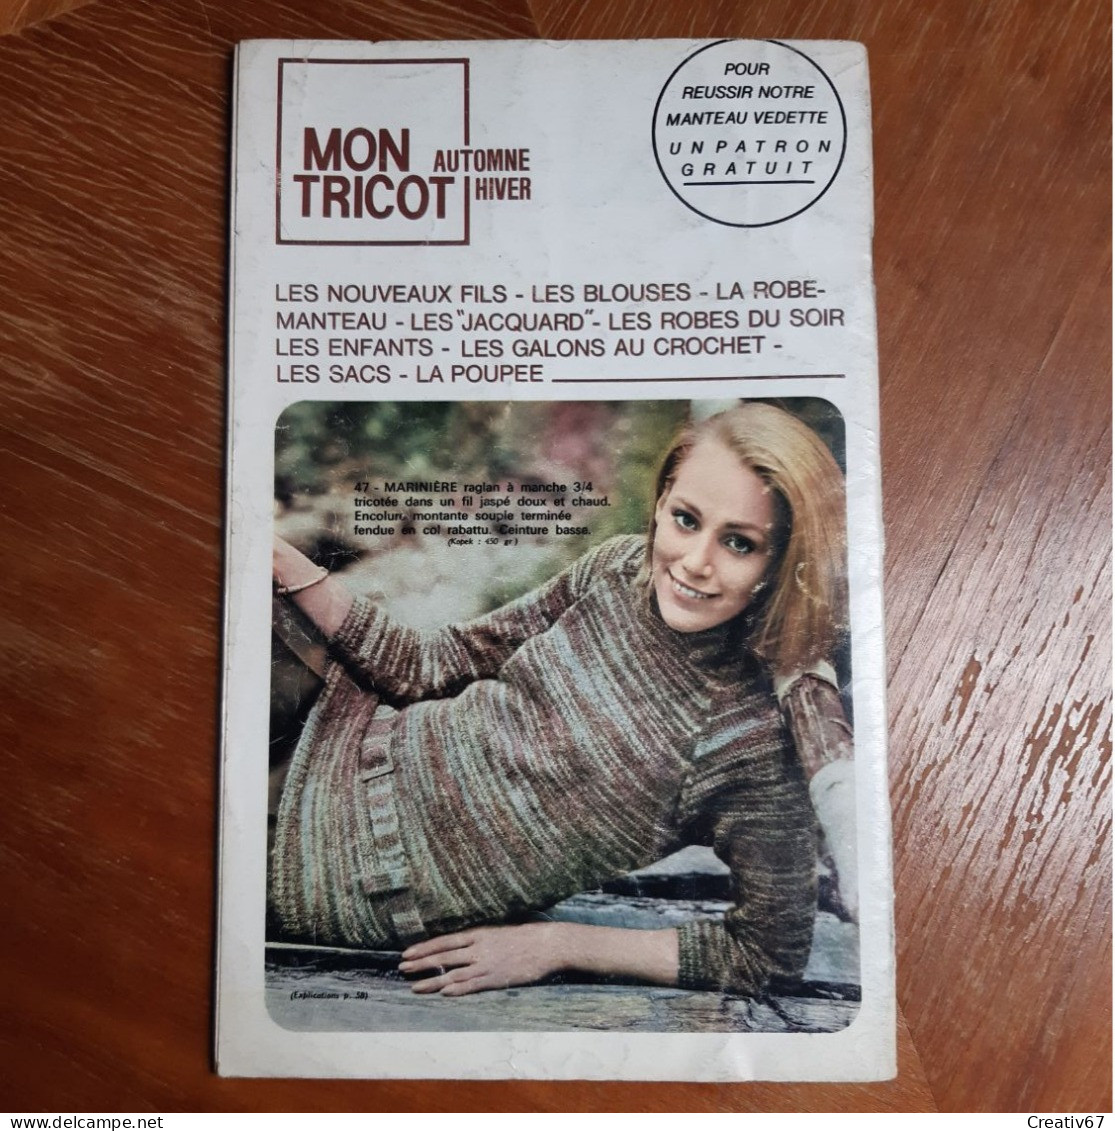 Mon Tricot 75 Edition De 1967 - Littérature